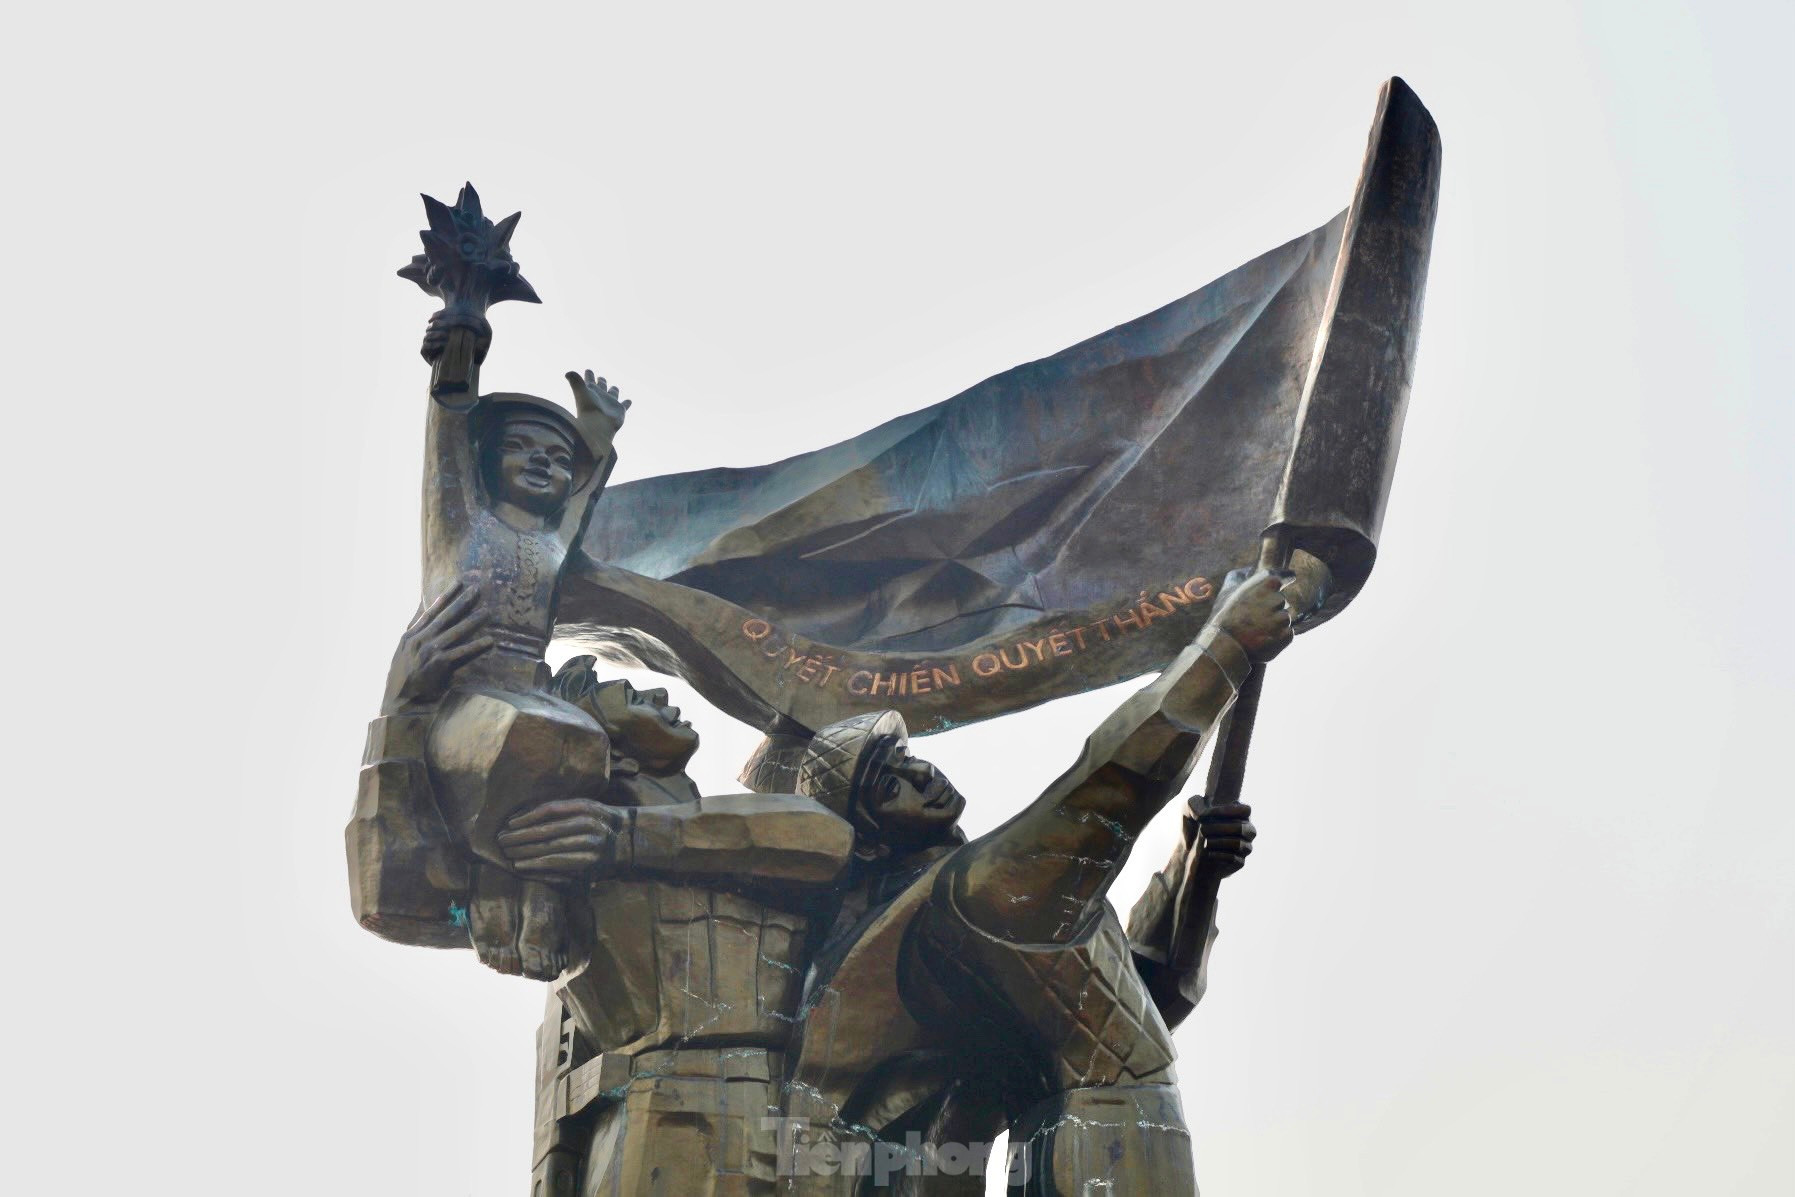 Tượng đài Chiến thắng Điện Biên Phủ những ngày gần đại lễ